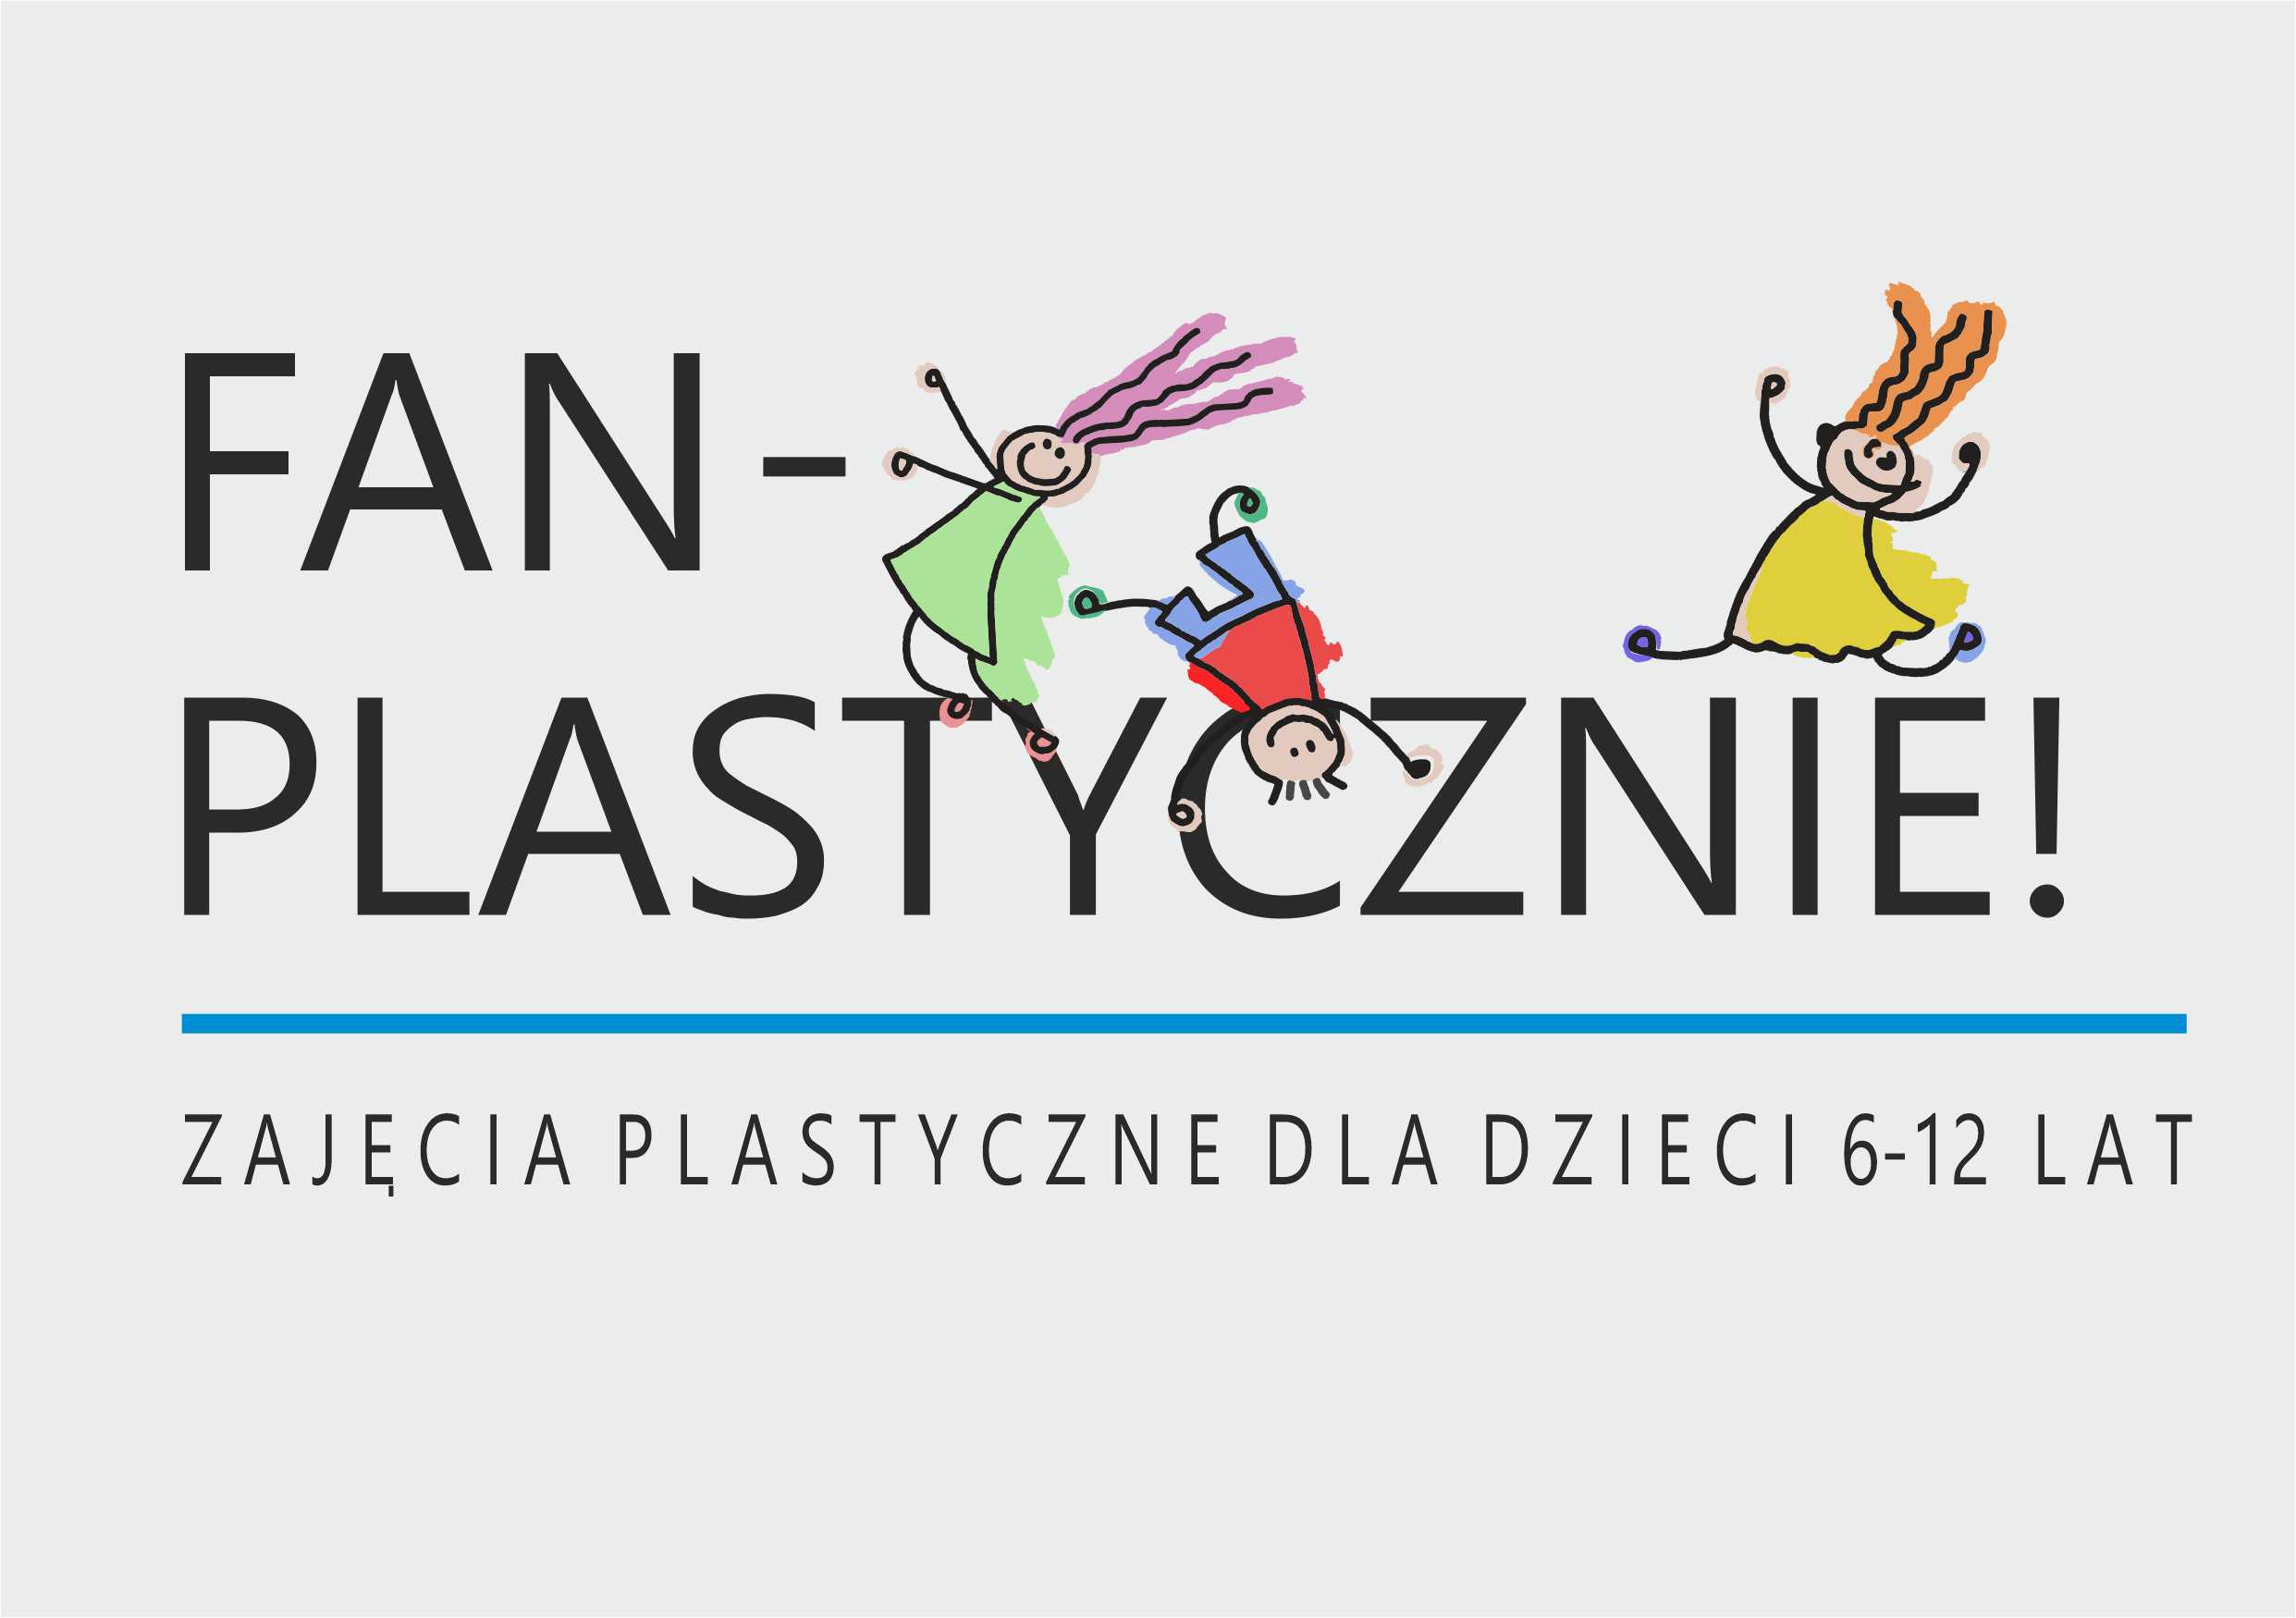 FAN-PLASTYCZNIE! zajęcia plastyczne dla dzieci 6-12 lat